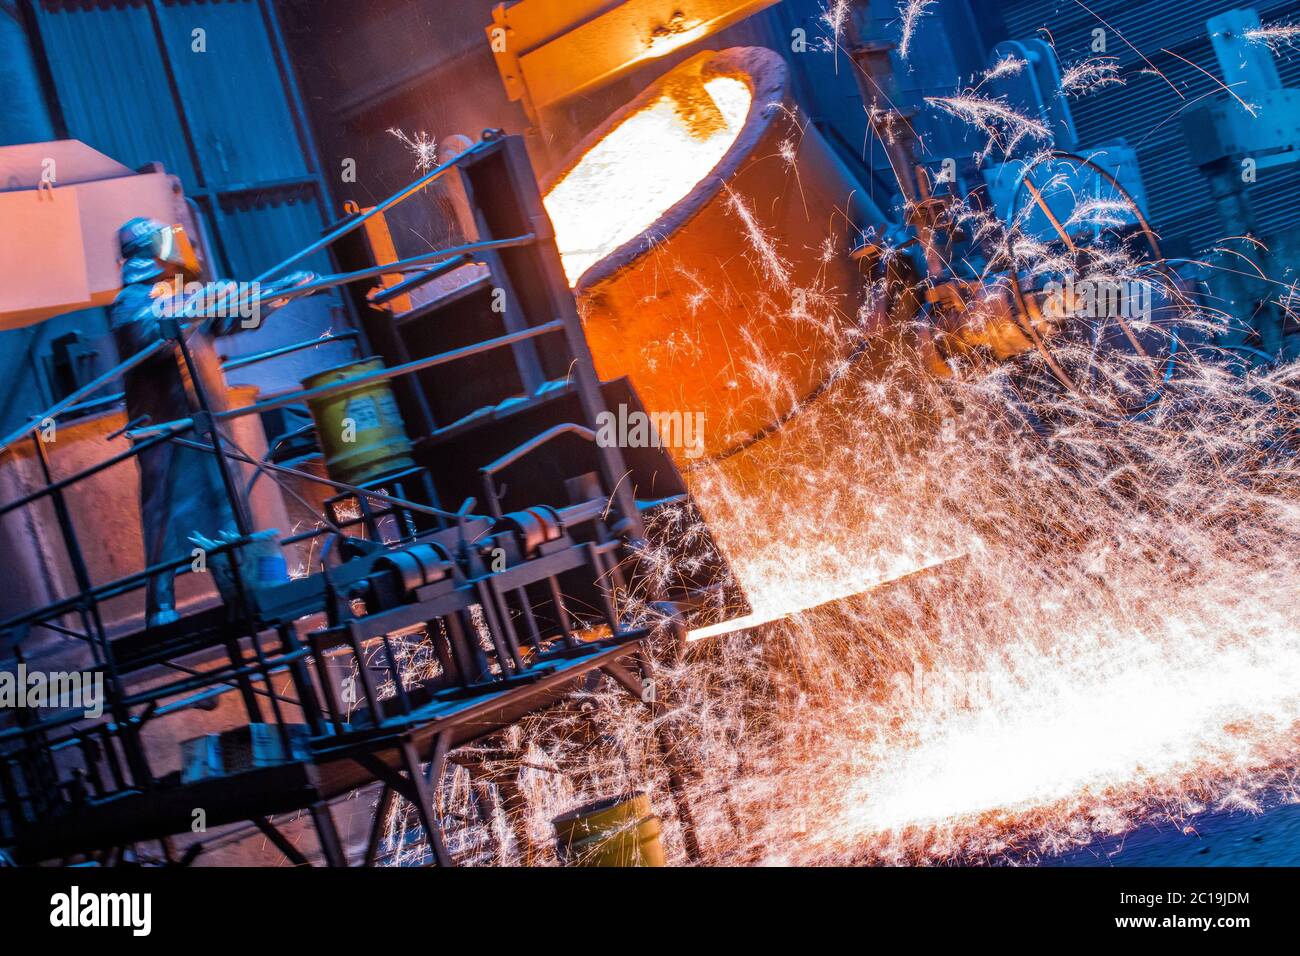 Torgelow, Alemania. 5 de junio de 2020. La temperatura del hierro fundido  es controlada por los trabajadores de la fundición de hierro antes de los  hornos de fusión para su posterior procesamiento.